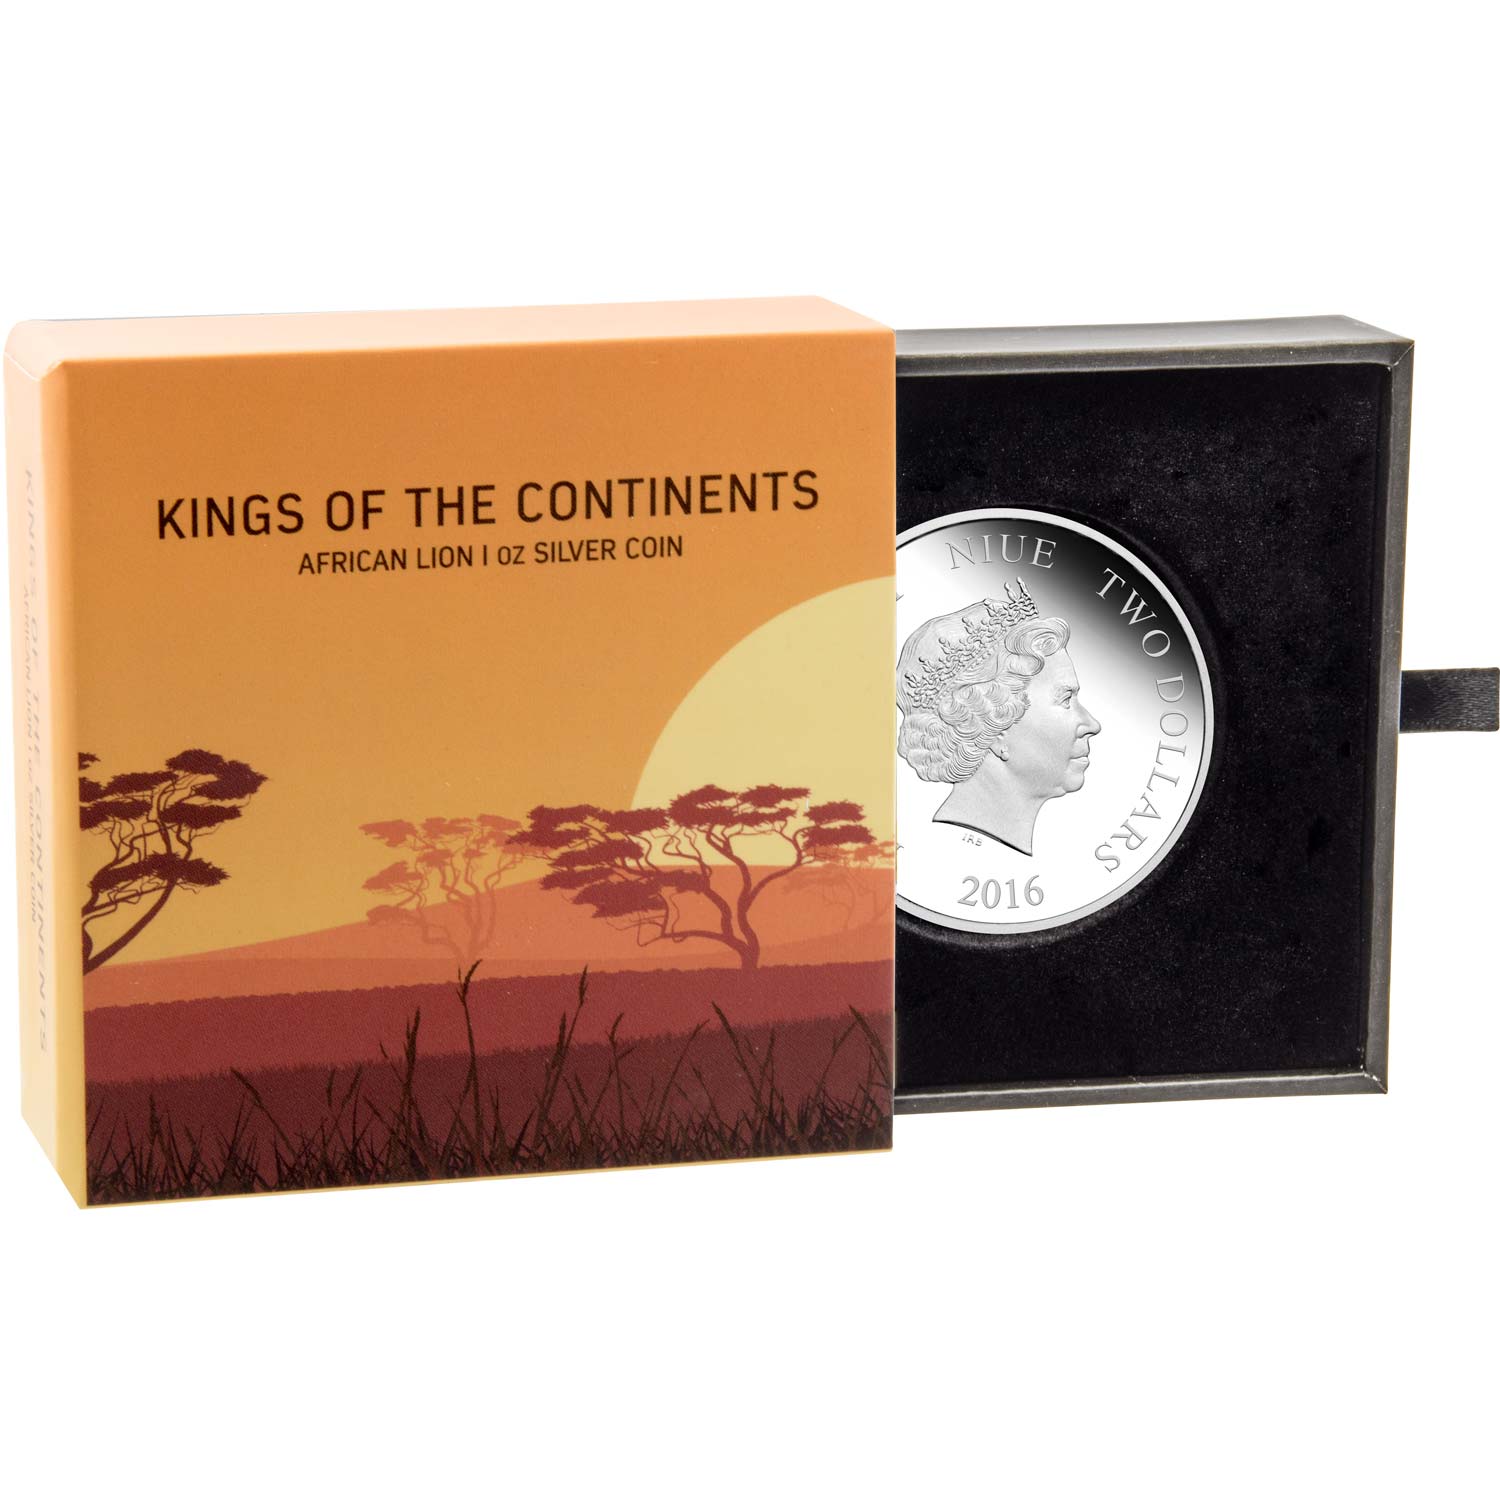 Nuevas onzas de Plata. - Página 13 2016-NZM-King-of-Continents-African-Lion-BOX